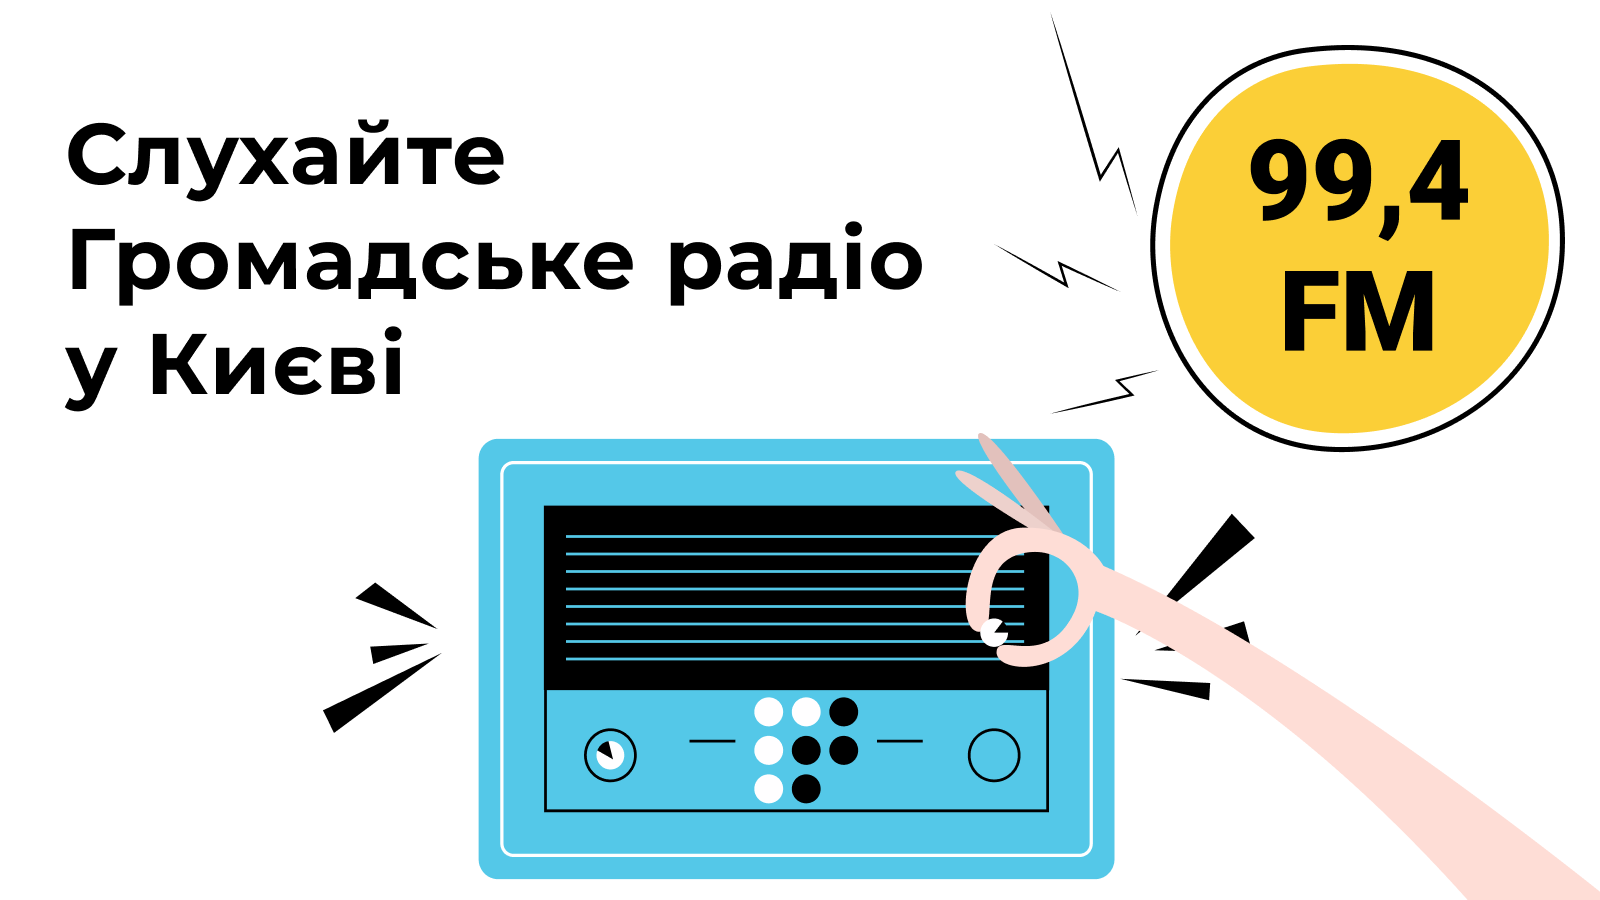 Громадське радіо у Києві на 99,4 FM щодоби має понад 41 тисячу слухачок та слухачів